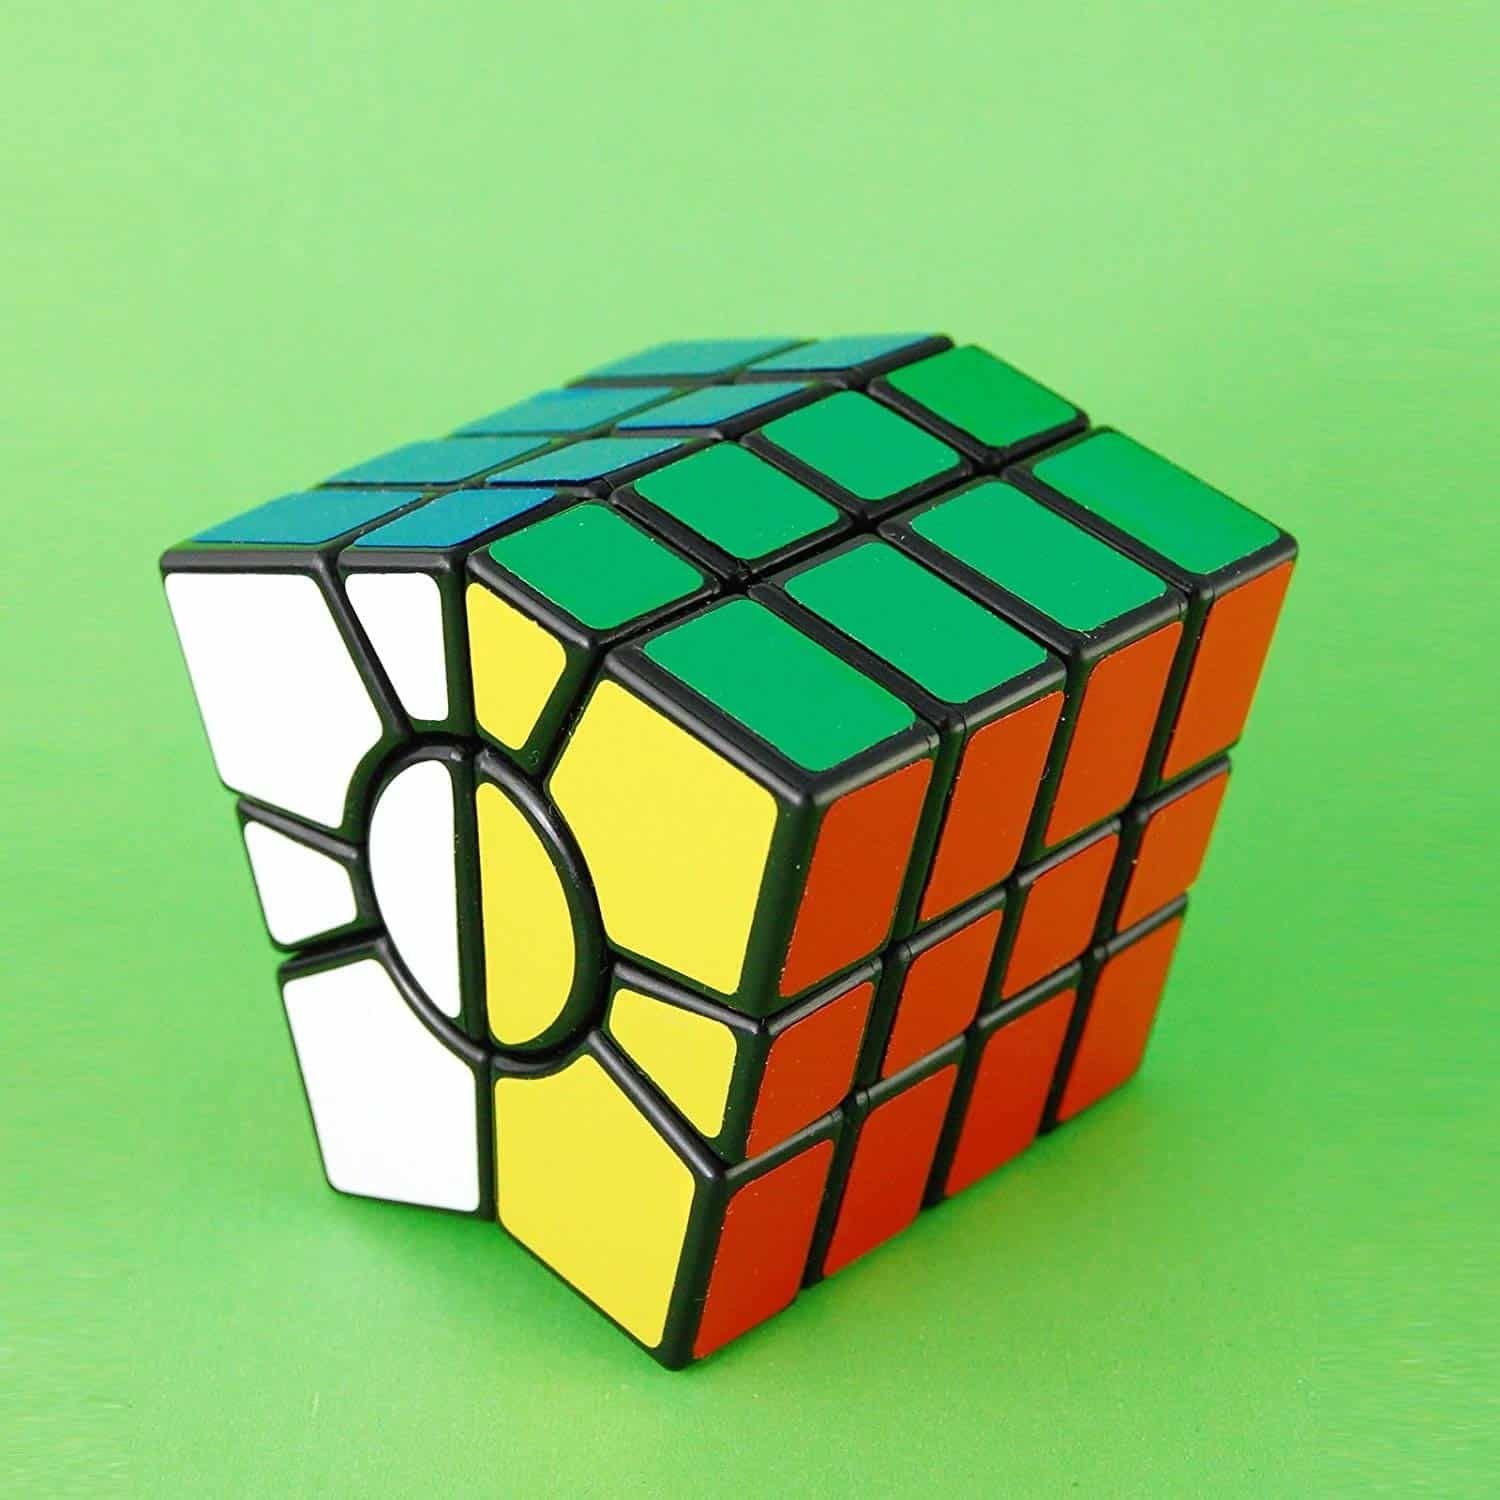 Кубик рубика 1488. Кубик Рубика 23x23. Кубик Рубика ПЕТАМИНКС. Rubix Cube 3x3. 12x12 кубик Рубика.